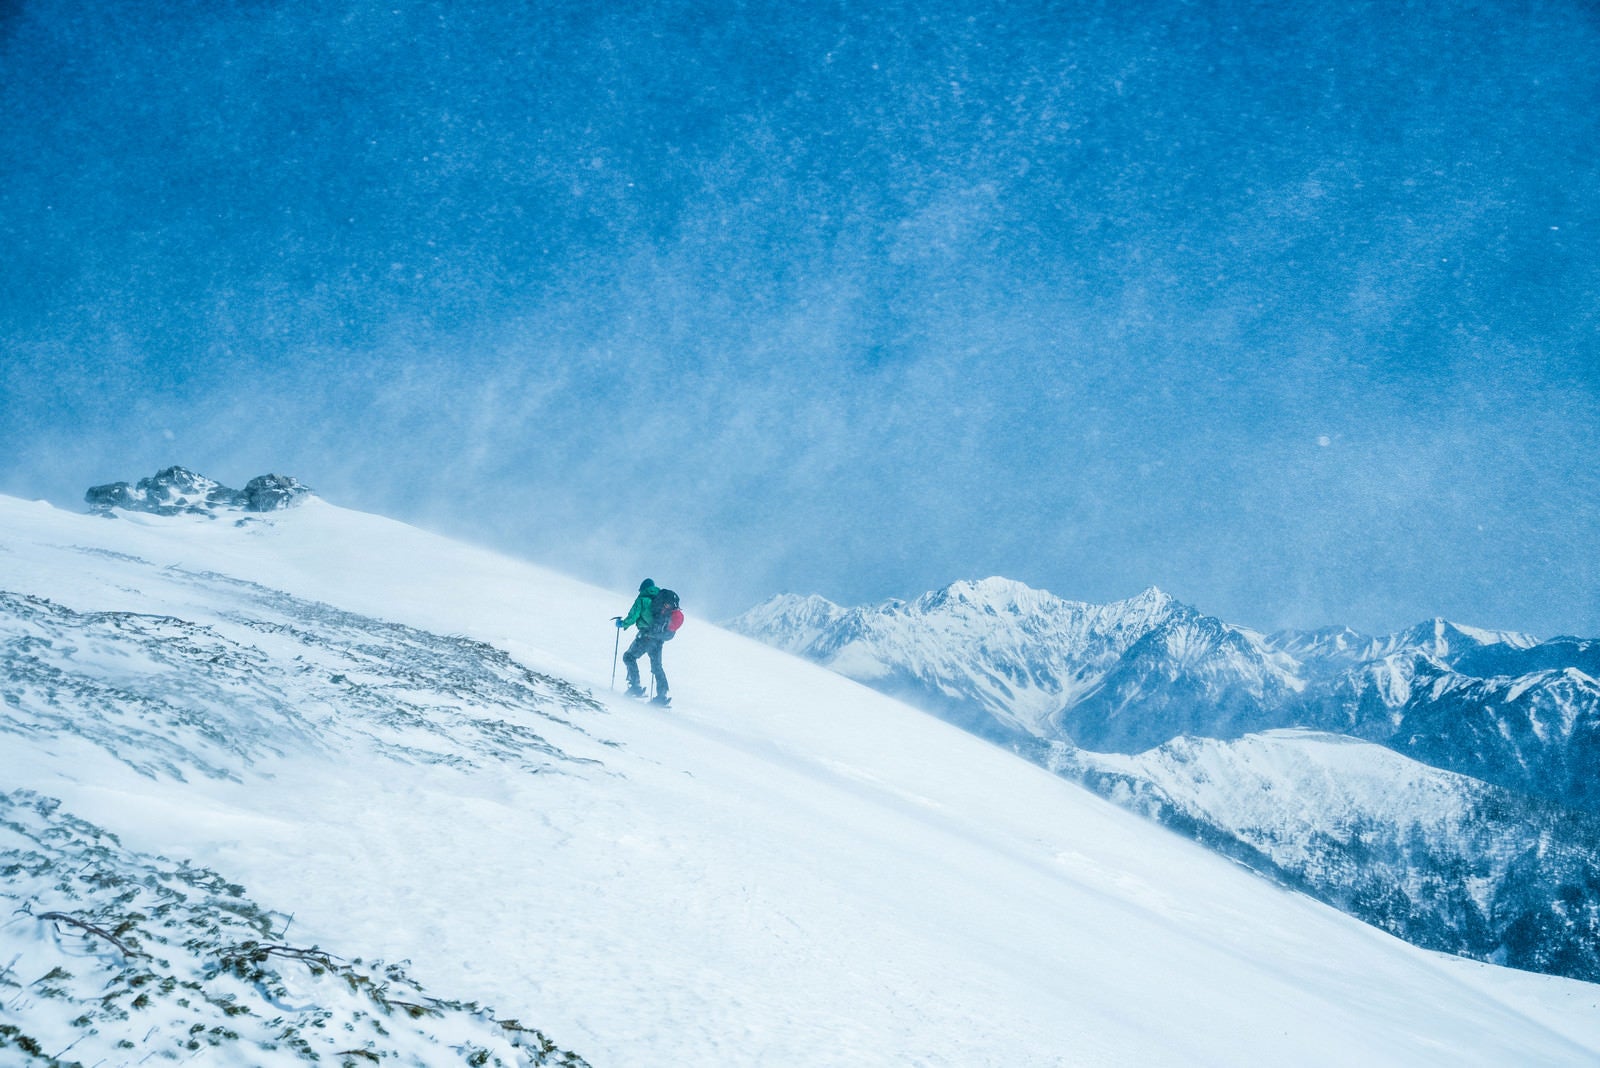 「舞い上がる雪と山スキーヤー」の写真